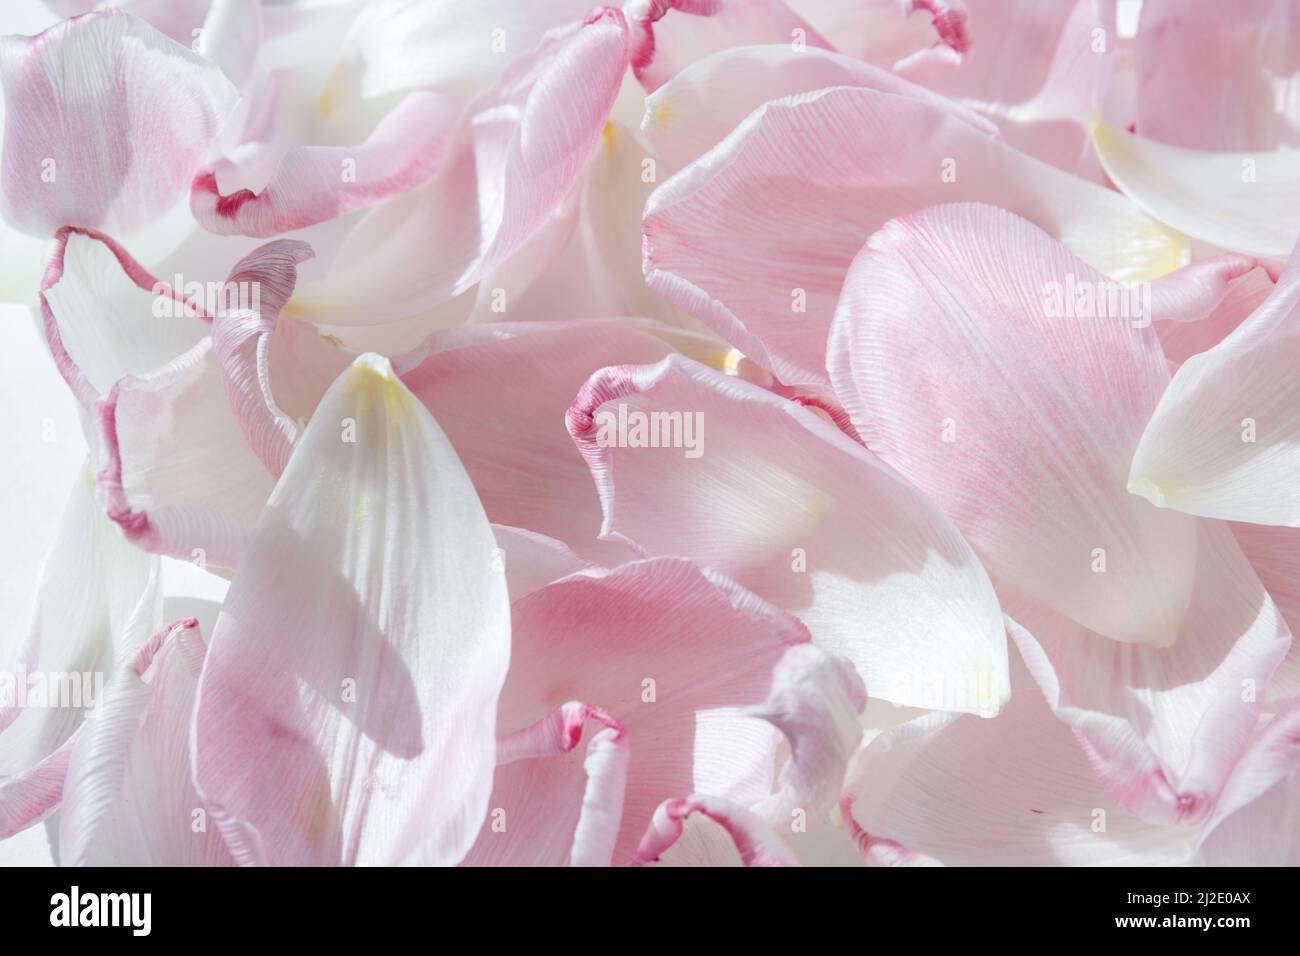 Ein Tulpenblatt. Rosa gefallene Tulpenblätter. Romantischer, sanfter Hintergrund. Ein Symbol der Zerbrechlichkeit und Zärtlichkeit Stockfoto